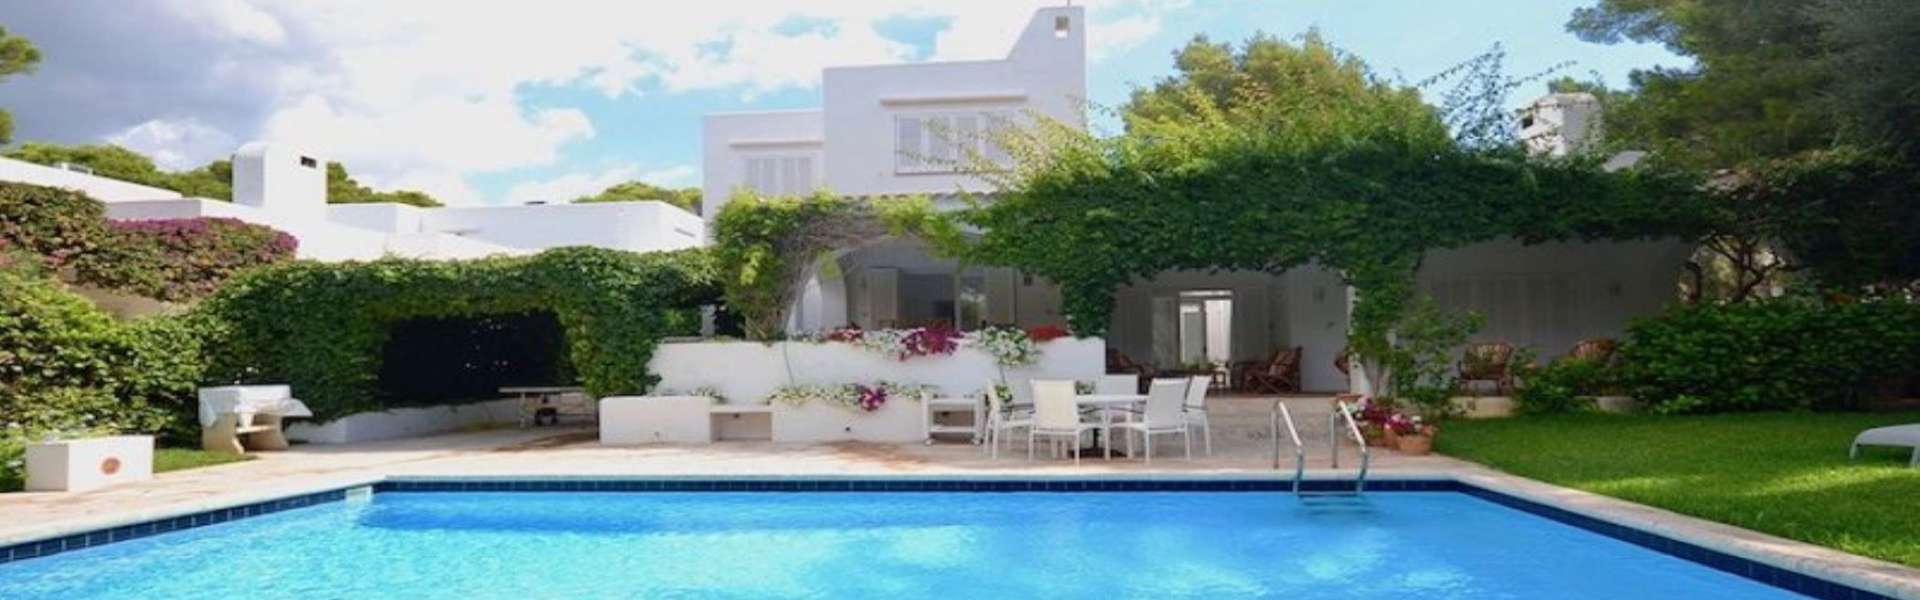 Cala d'Or - Ibizan style villa for sale